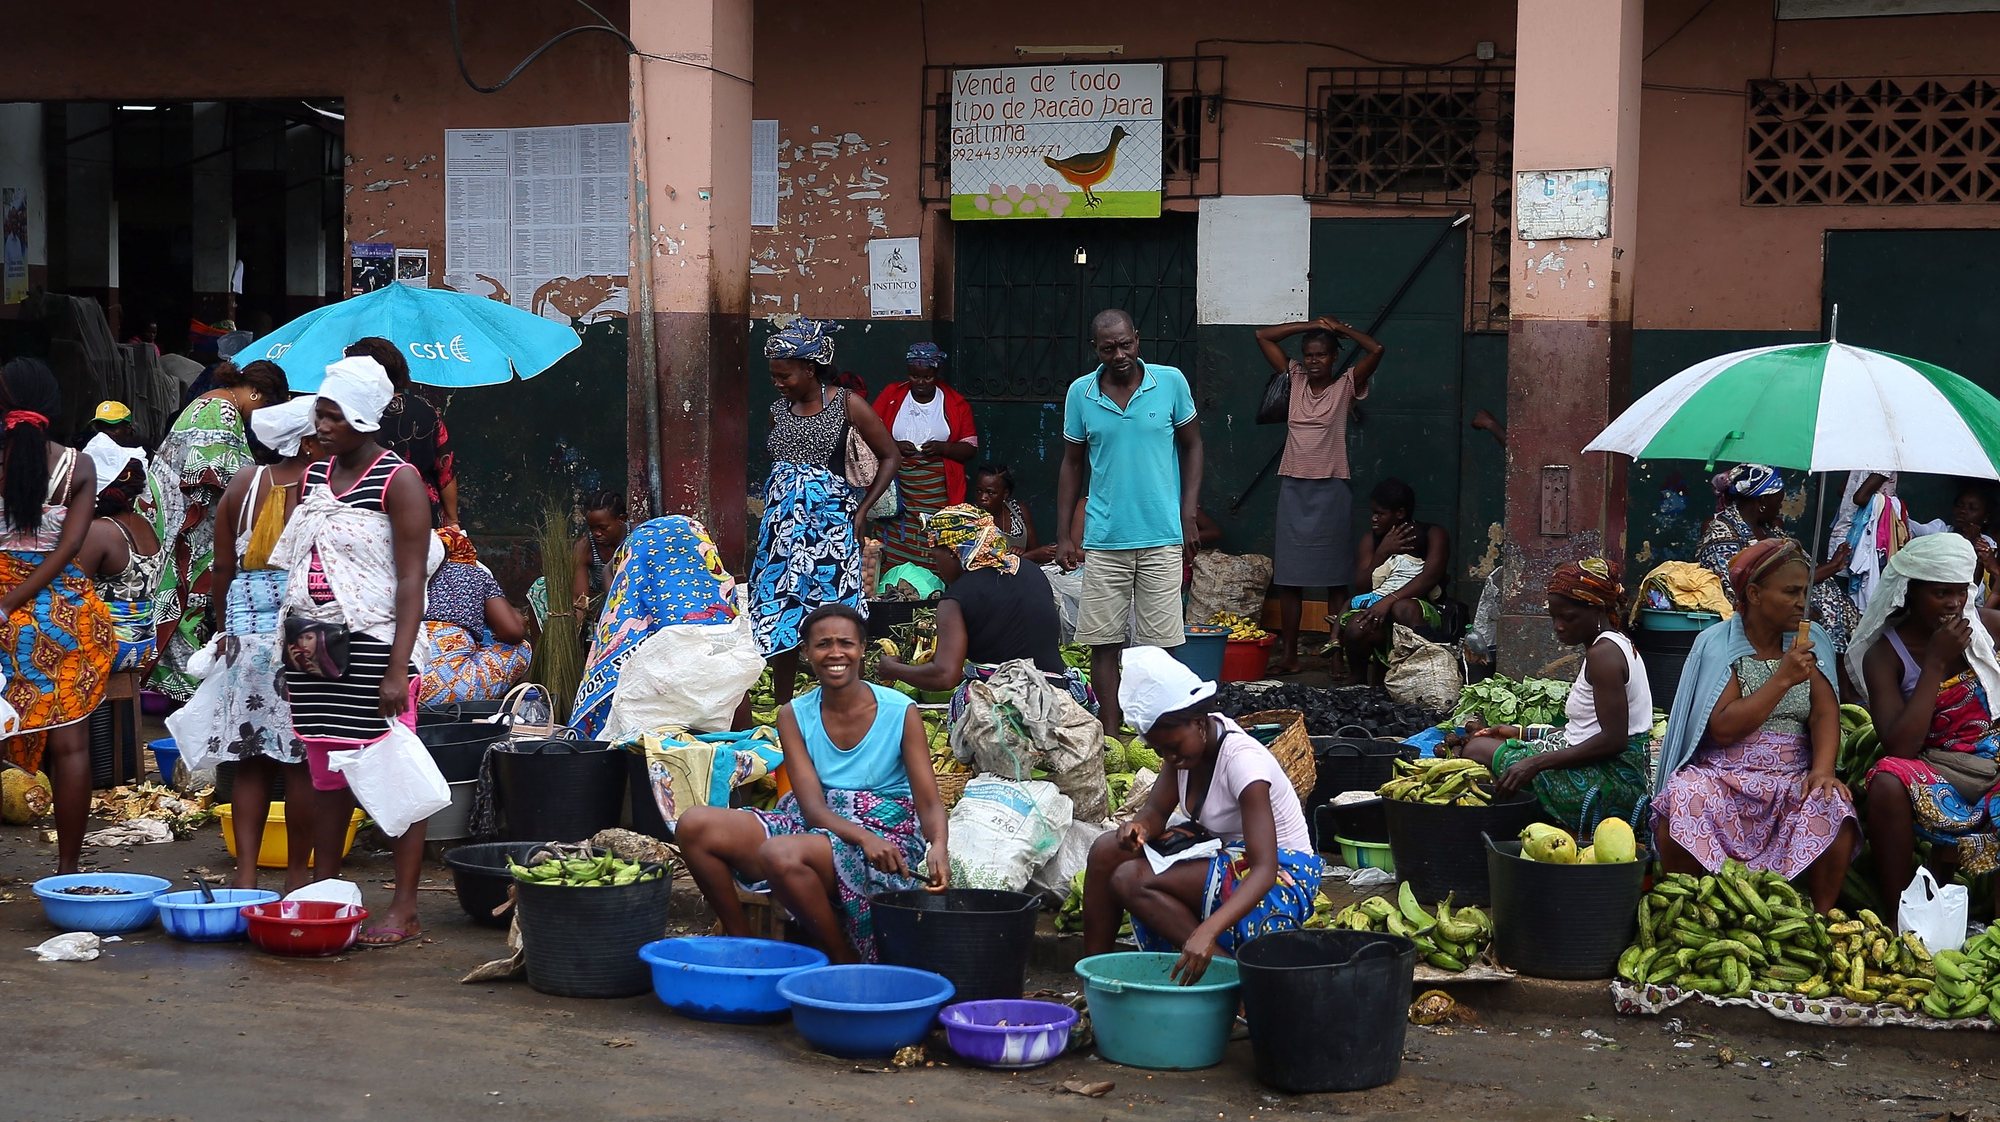 No mercado municipal de São Tomé hoje vendem-se todos os produtos menos o arroz, alimento que escasseia na ilha e que atinge preços elevados. Este alimento básico em São Tomé e Príncipe, está a indignar a população e o problema entrou na campanha eleitoral, quando falta uma semana para as legislativas. São Tomé, 30 de setembro de 2018.  . (ACOMPANHA TEXTO). NUNO VEIGA/LUSA